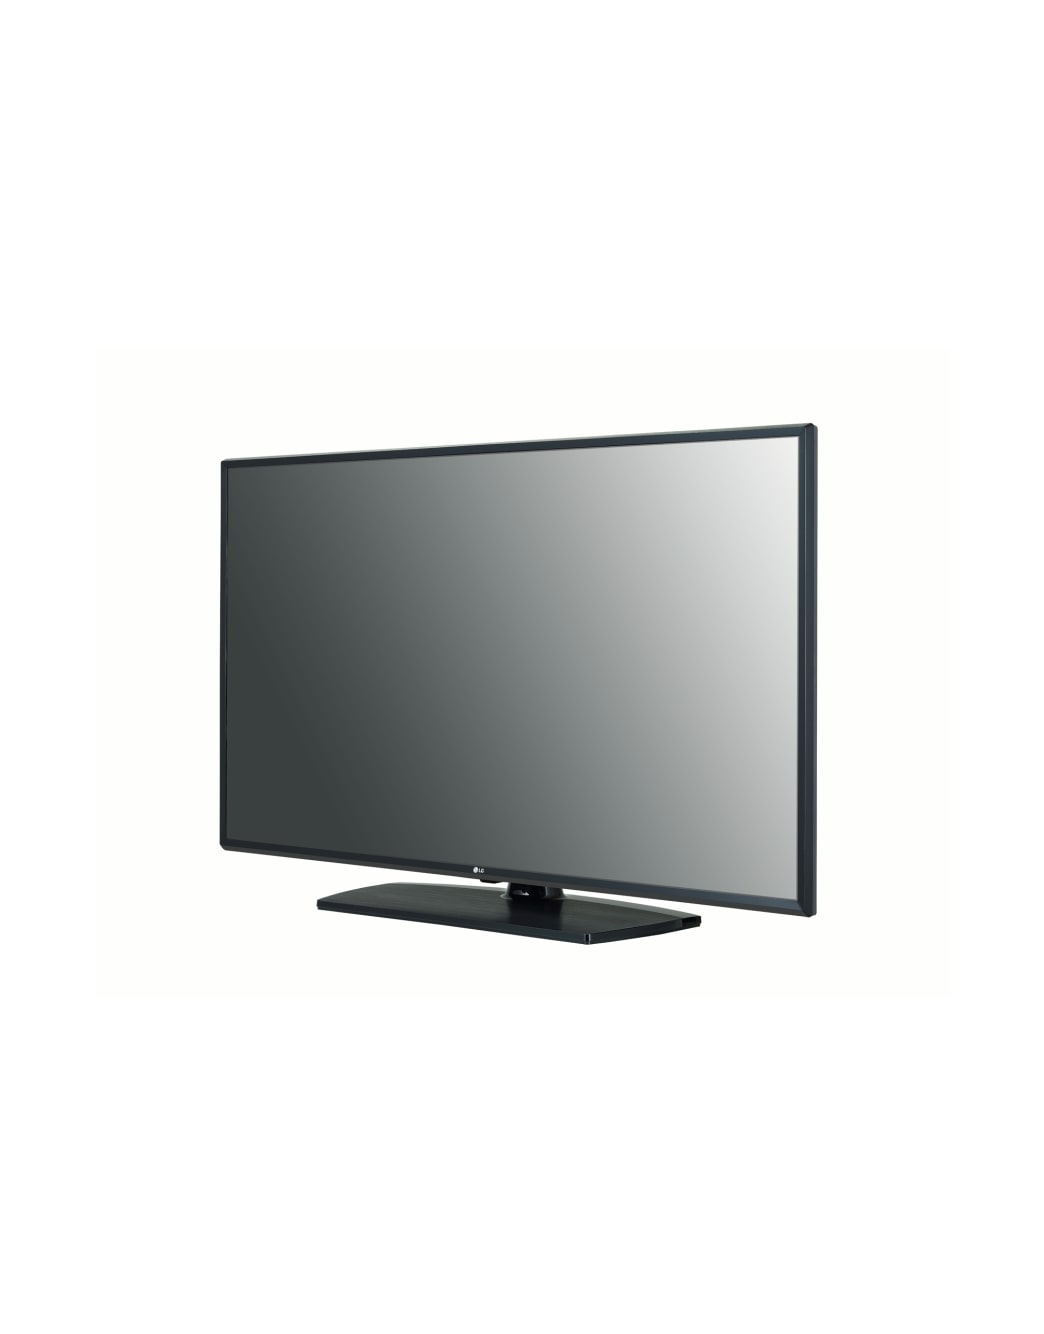 LG 50UT340H9 50" Commercial Grade 4K UHD LED TV Front View Alternate